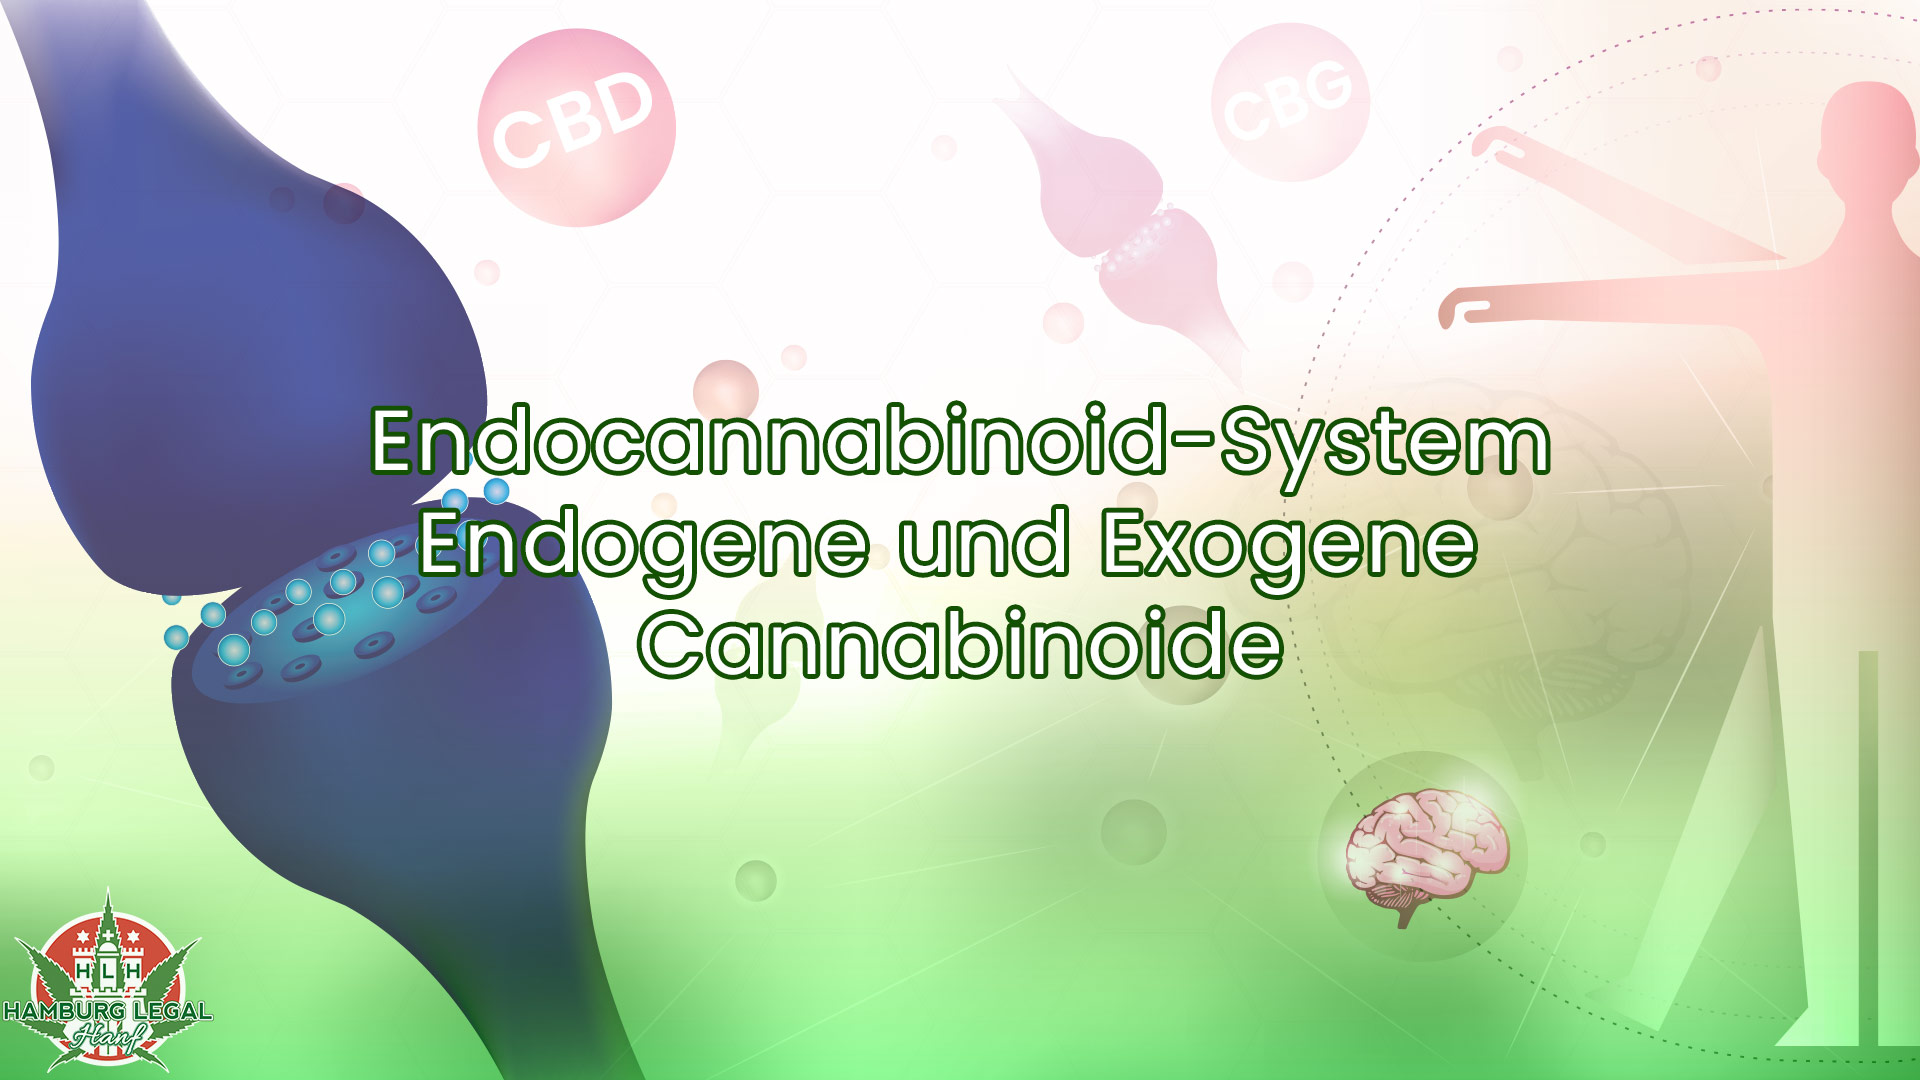 Endocannabinoid-System und Endogene & Exogene Cannabinoide